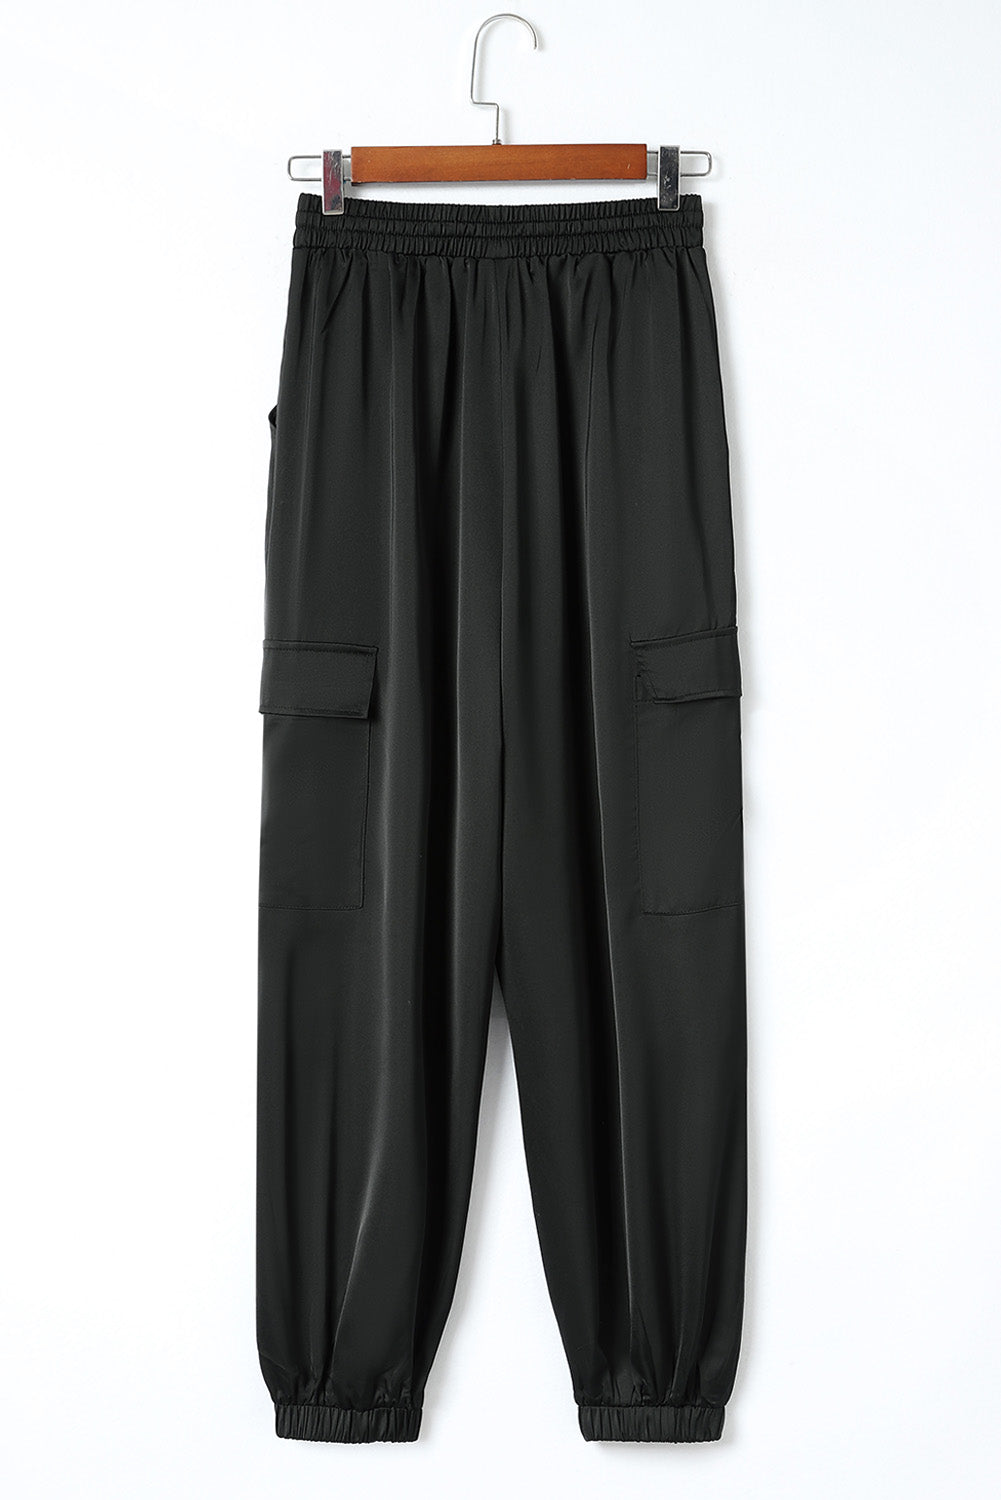 Pantaloni in vita elastica con coulisse in raso nero